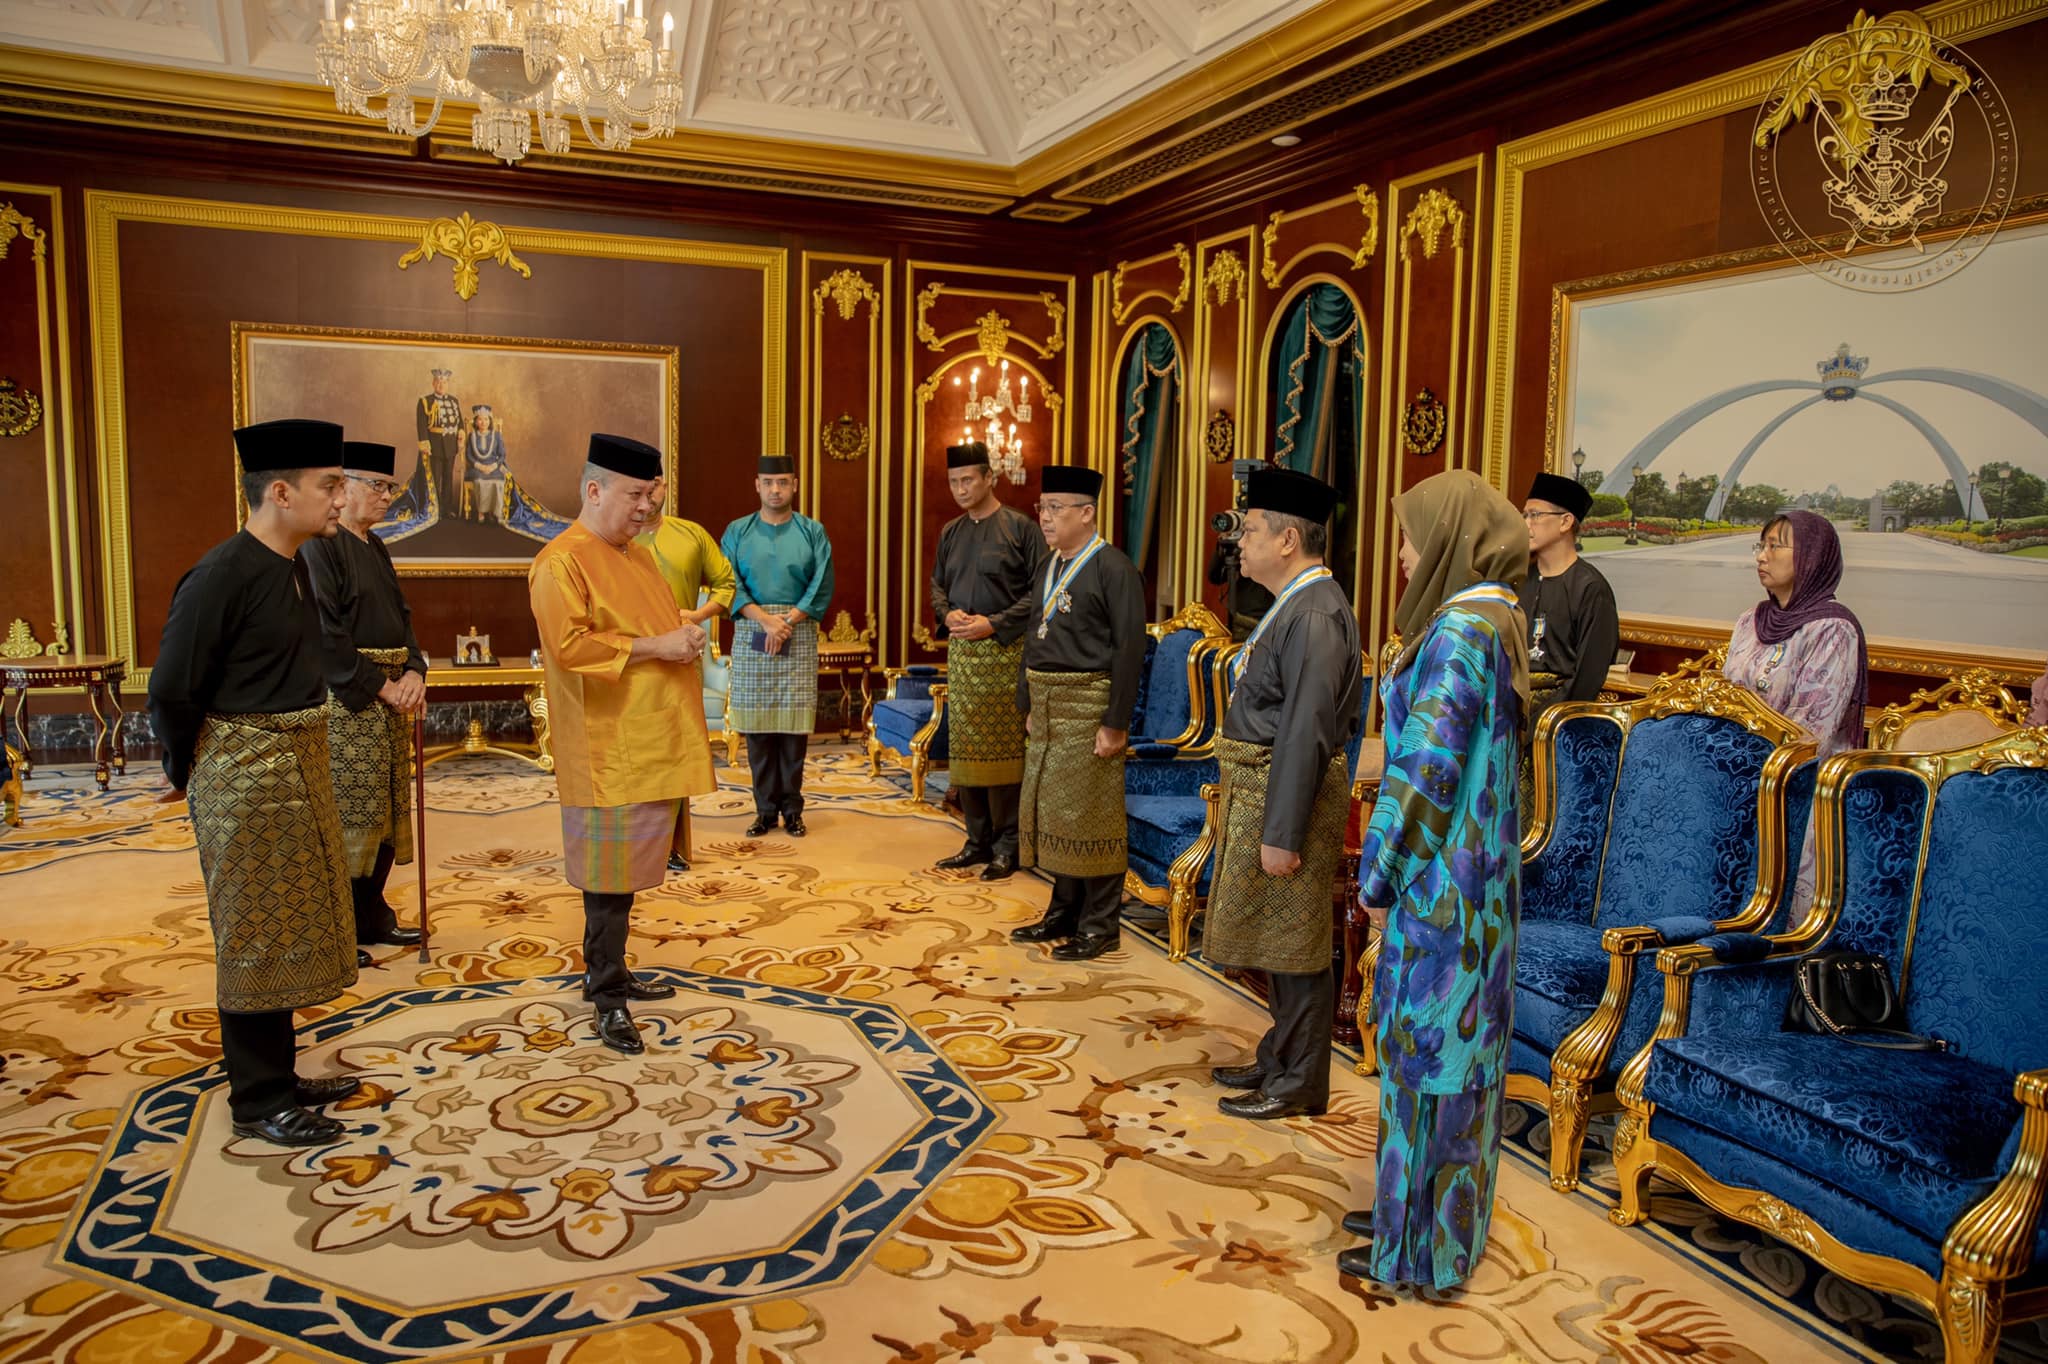 Hari keputeraan sultan johor 2022